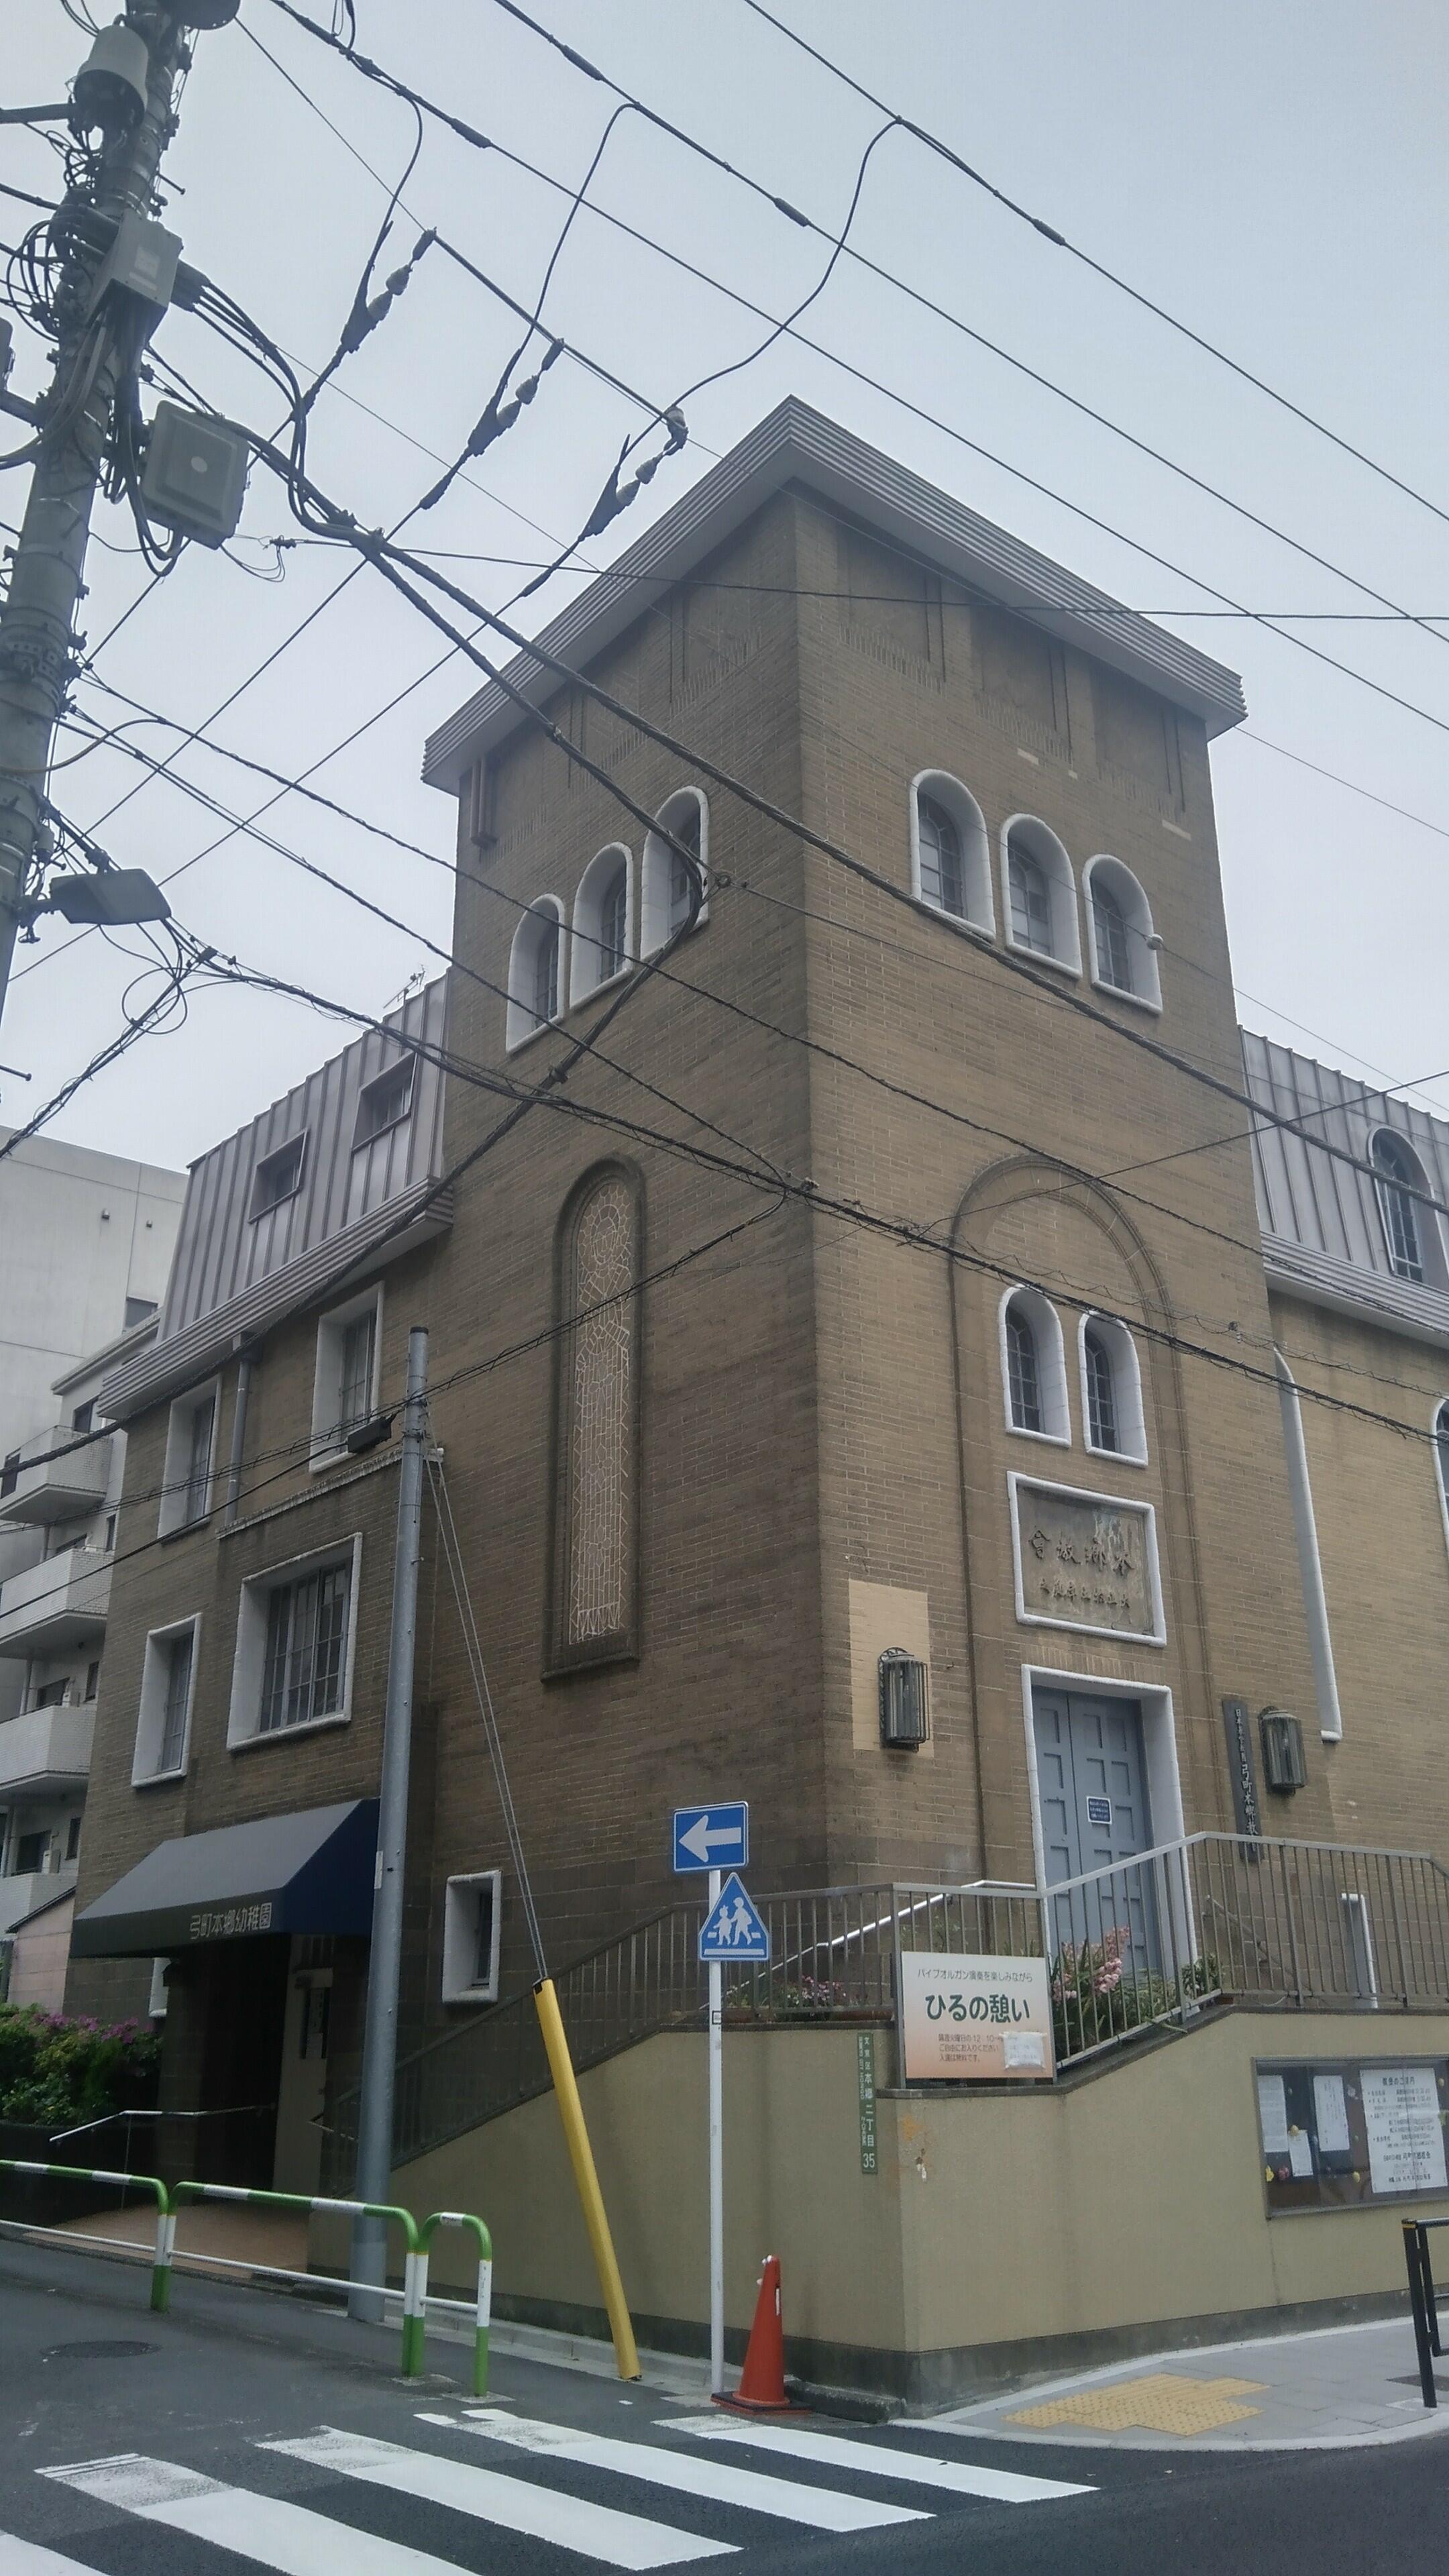 日本基督教団弓町本郷教会 - 文京区本郷/キリスト教教会 | Yahoo!マップ